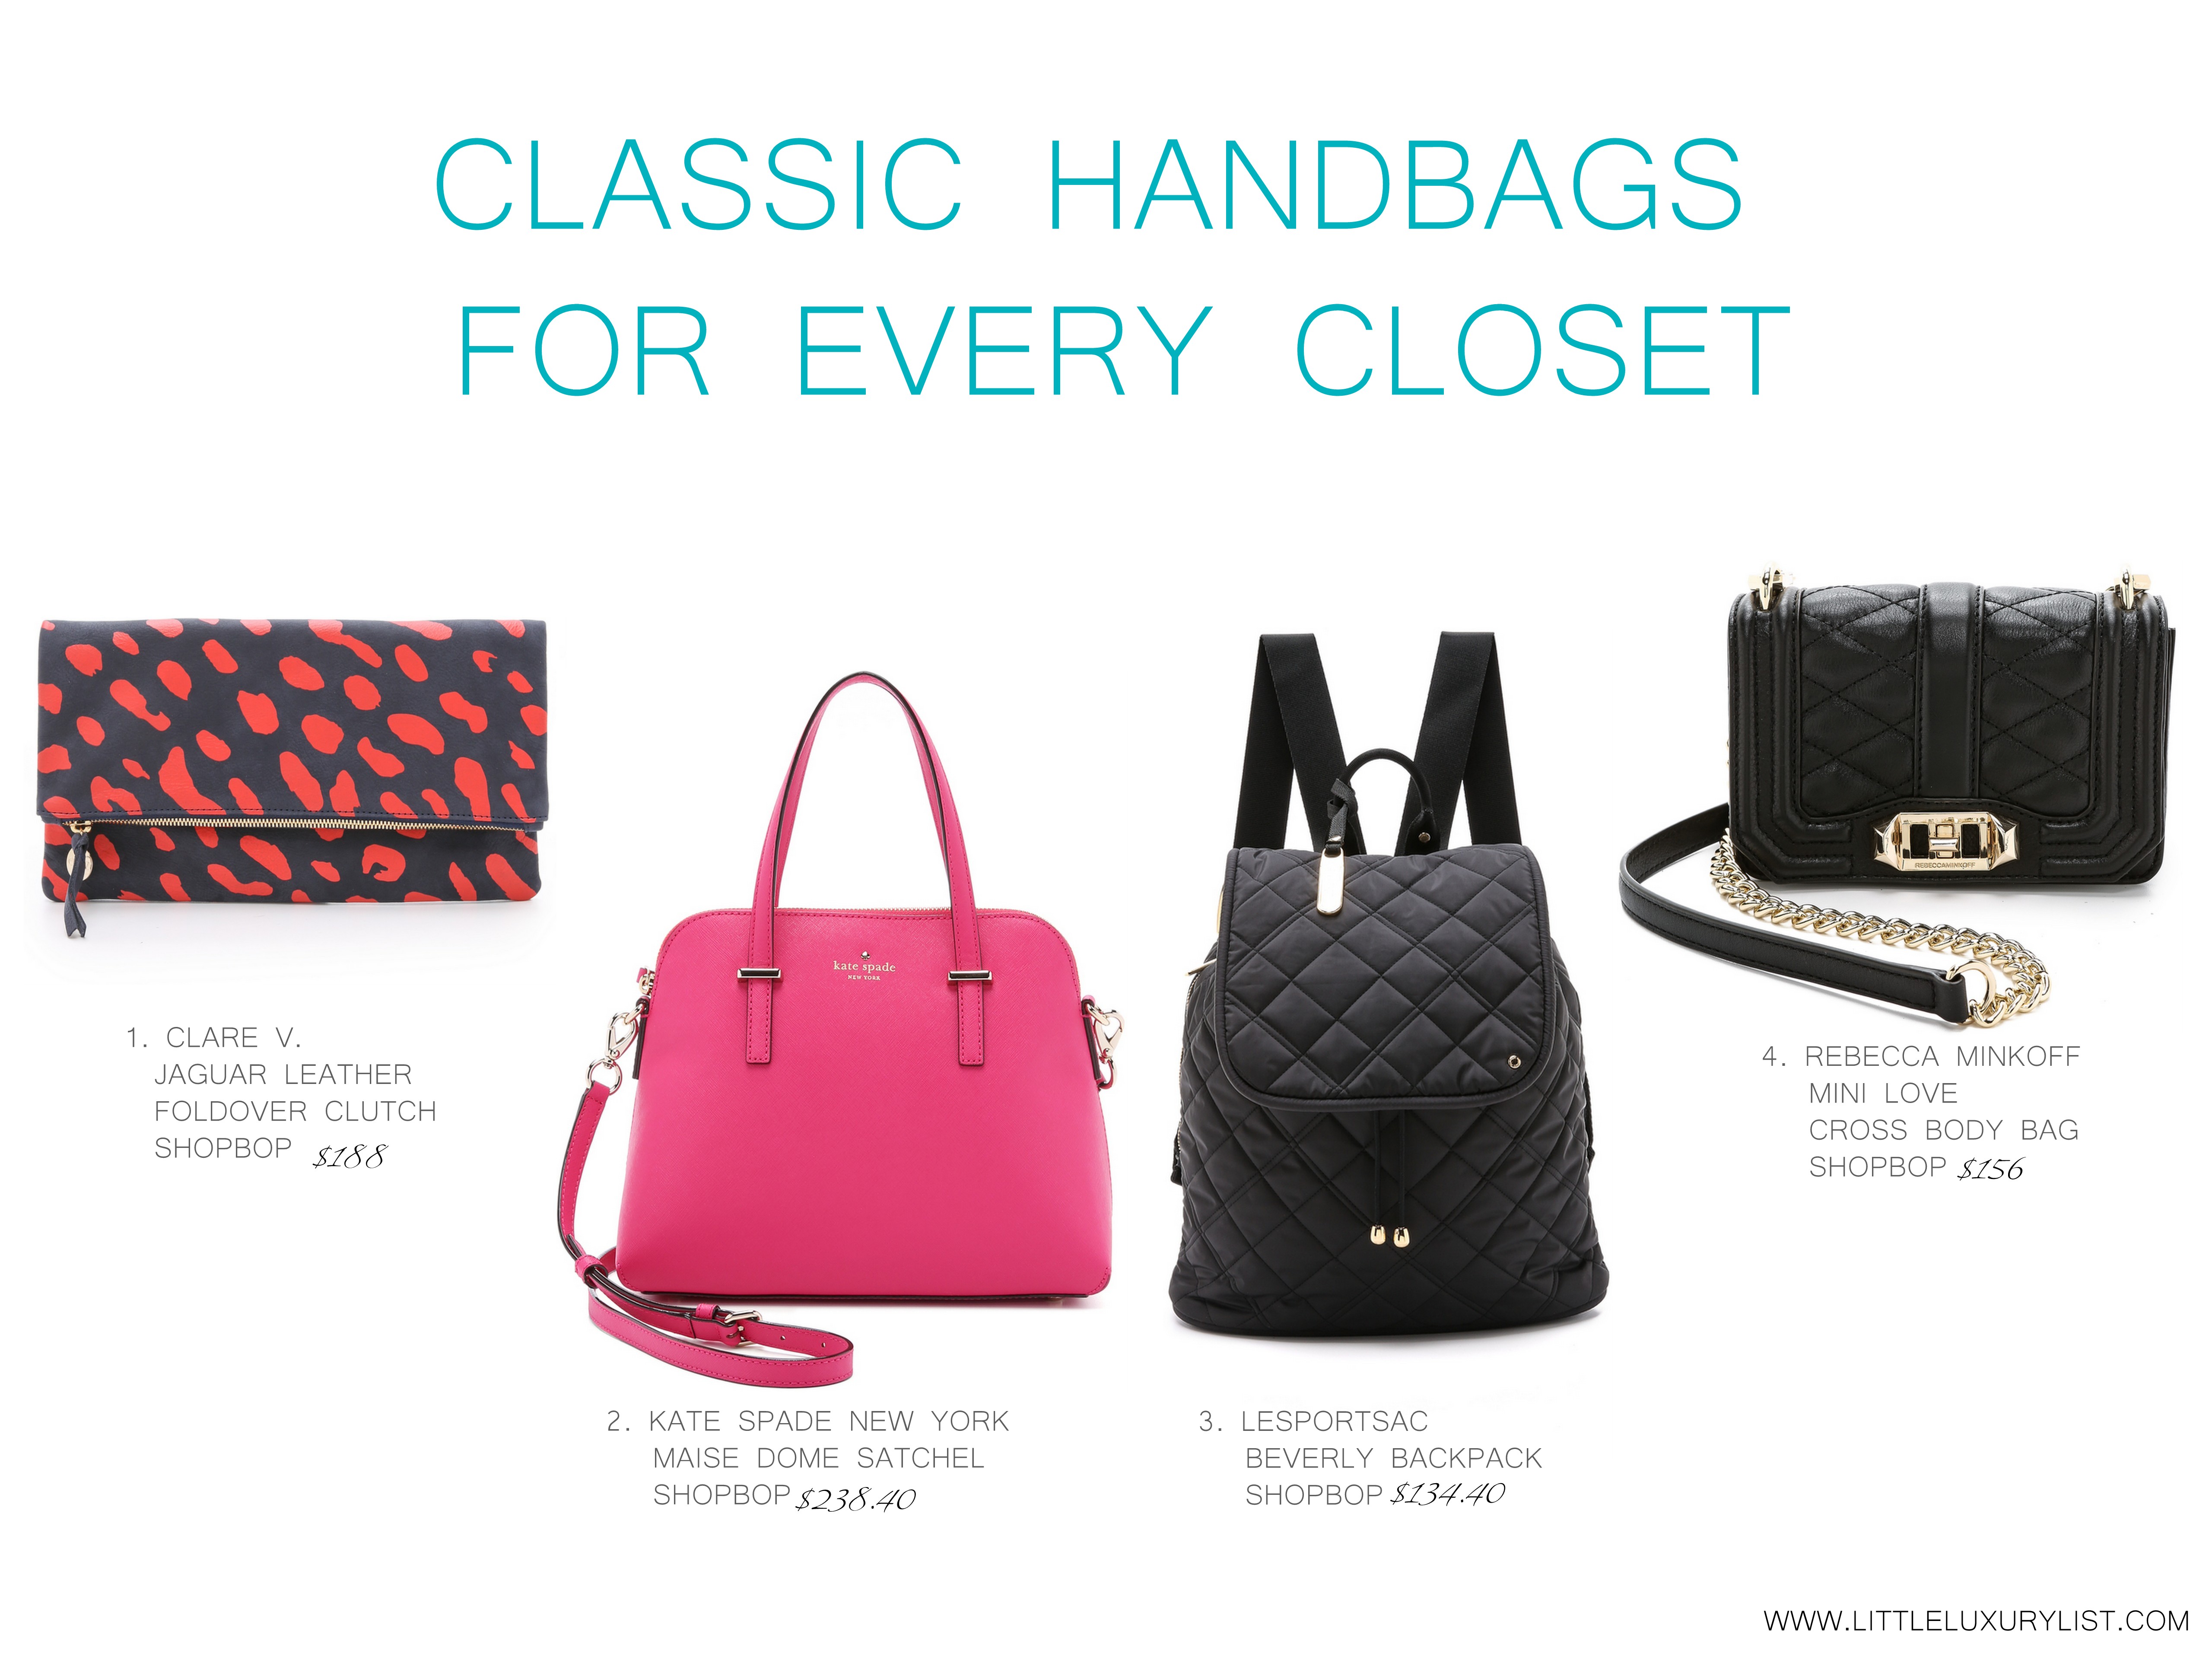 Classic handbags for every closet